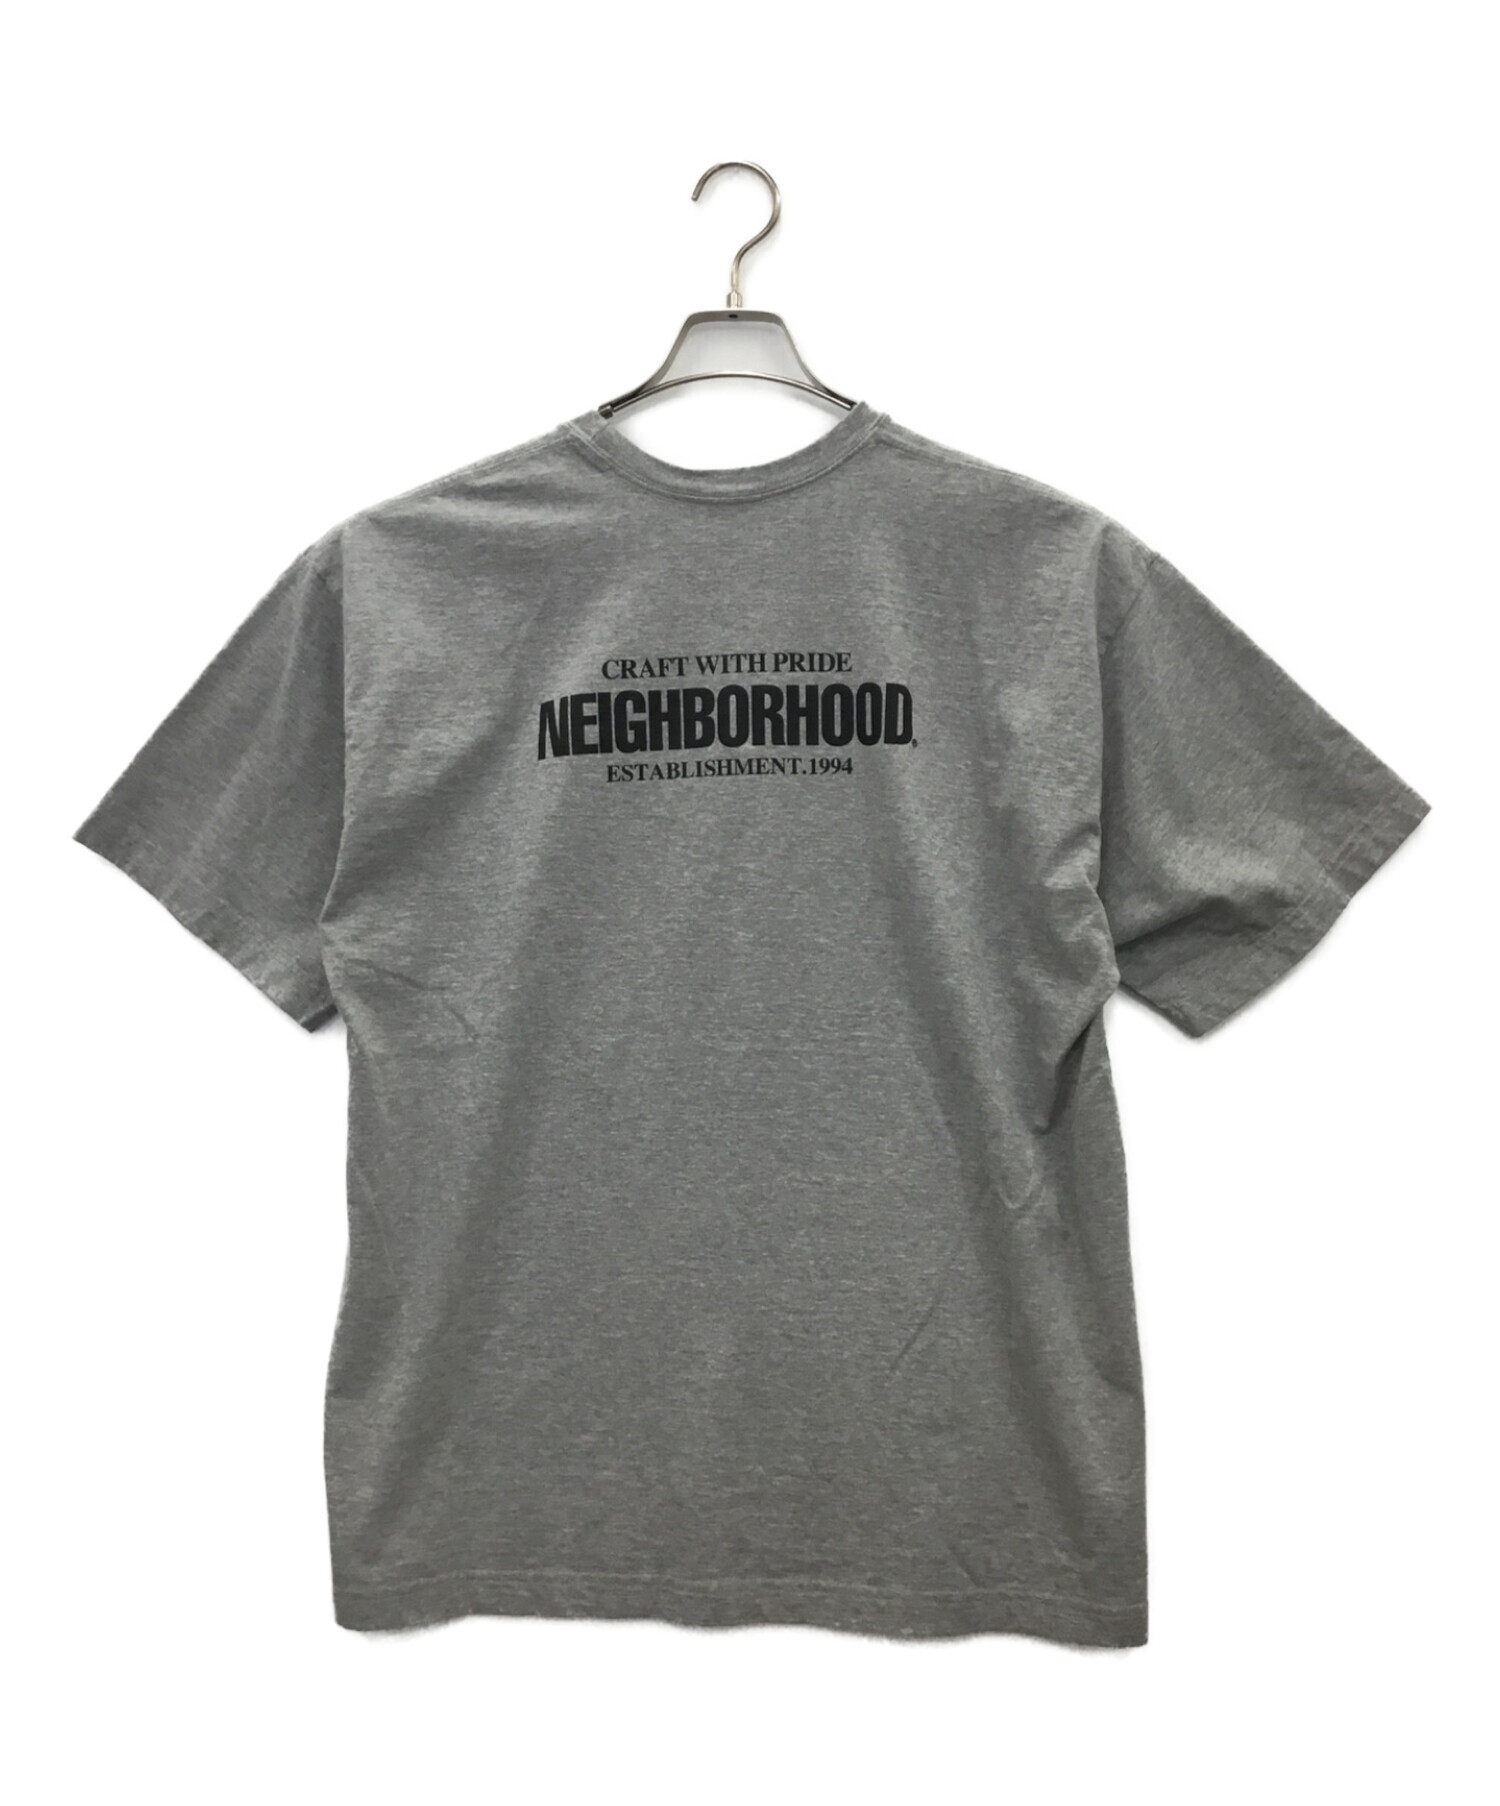 neighborhood ネイバーフッド Tシャツ サイズL - Tシャツ/カットソー